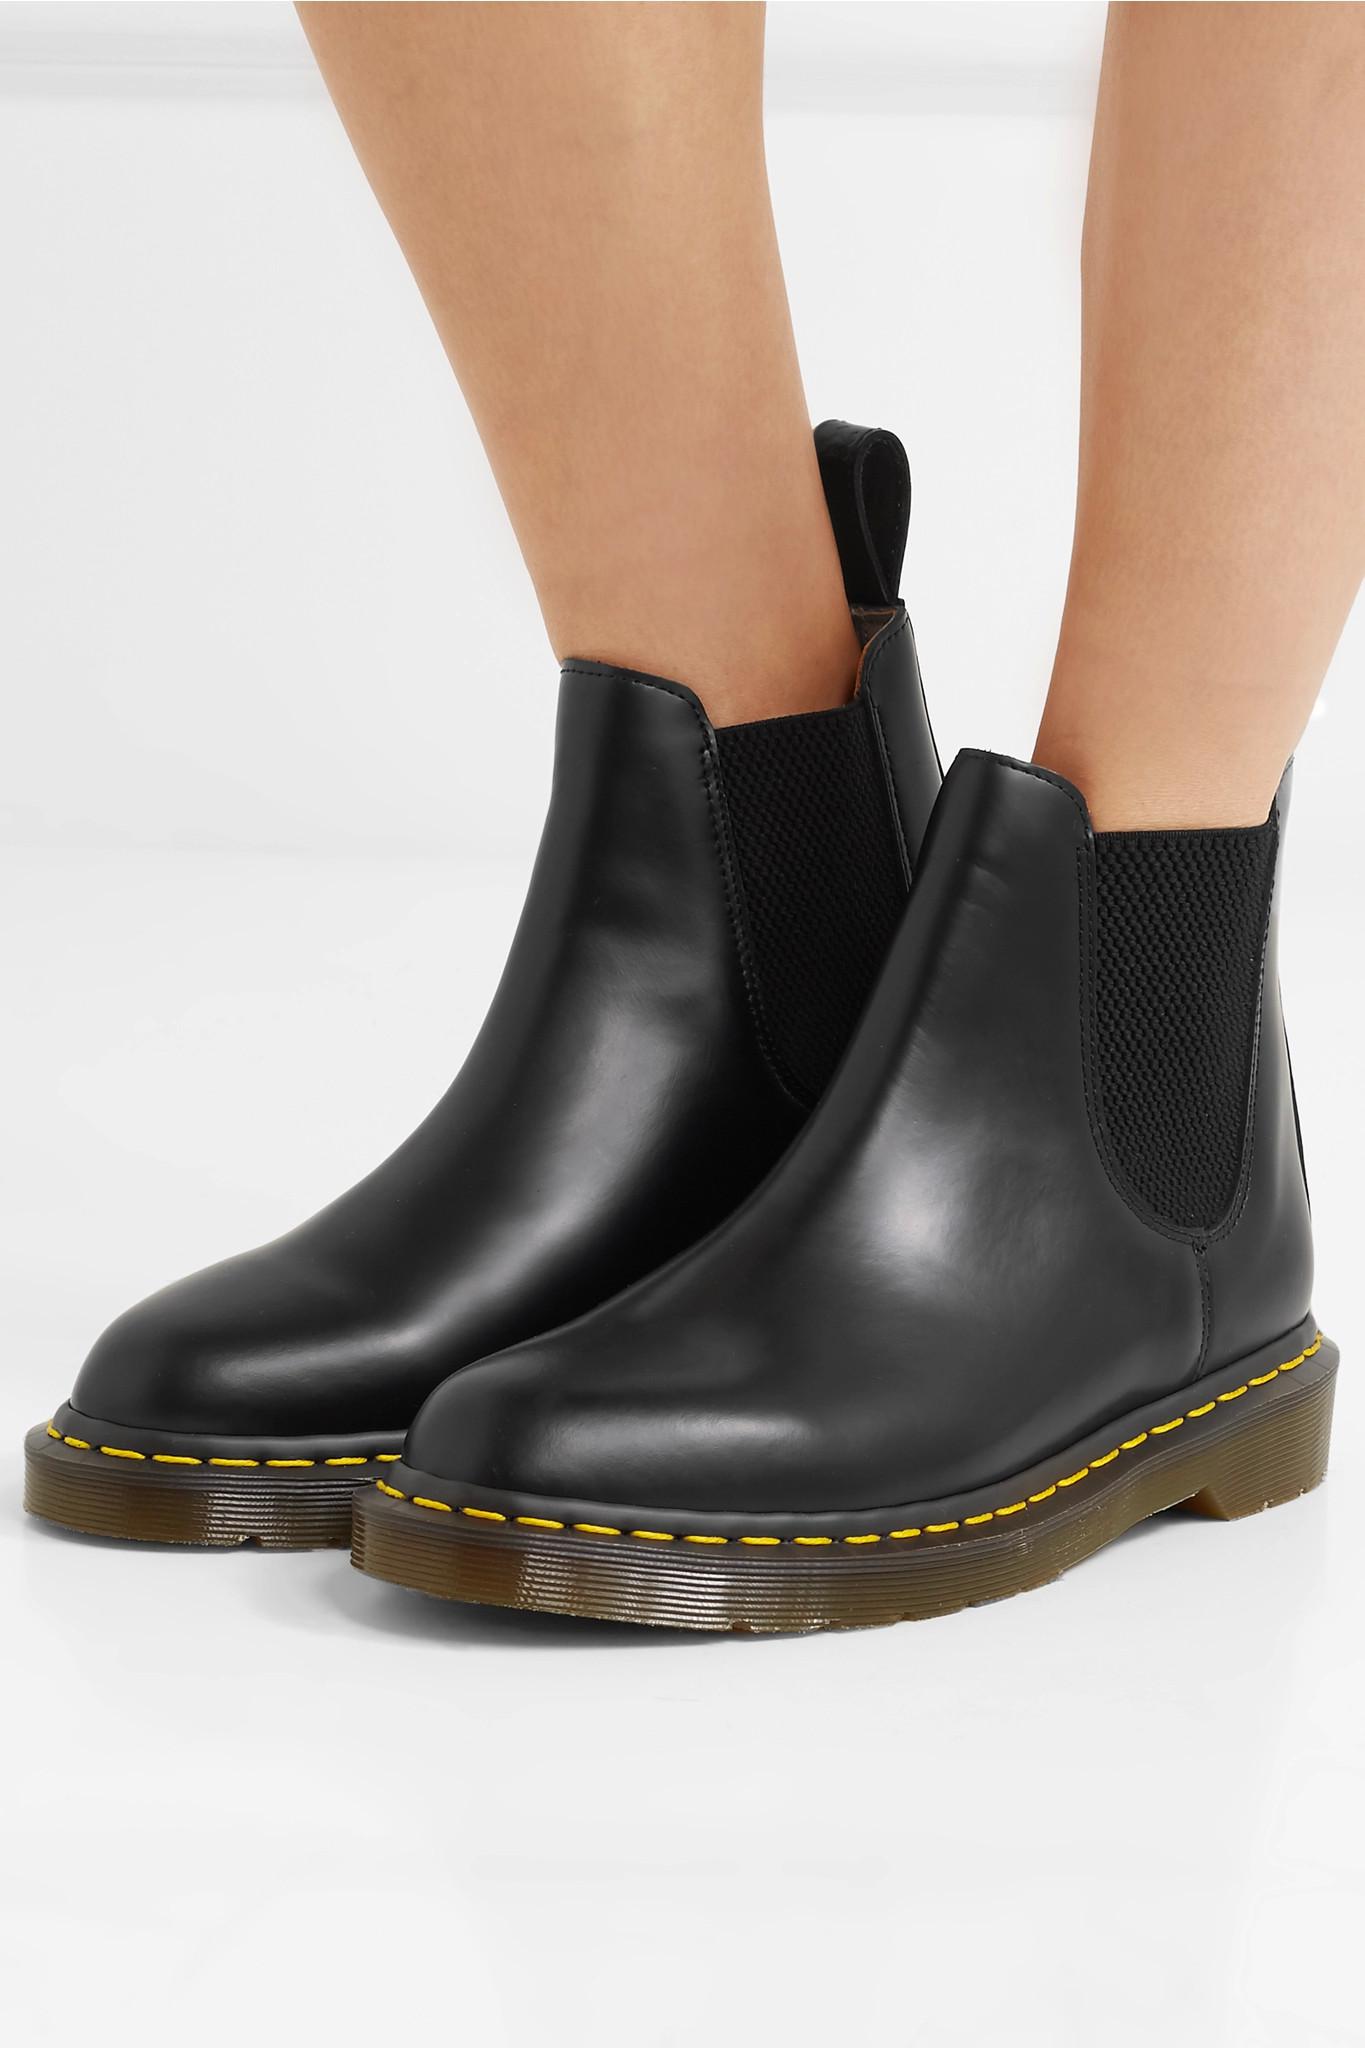 Comme des Garçons + Dr Martens Leather Chelsea Boots in Black - Lyst